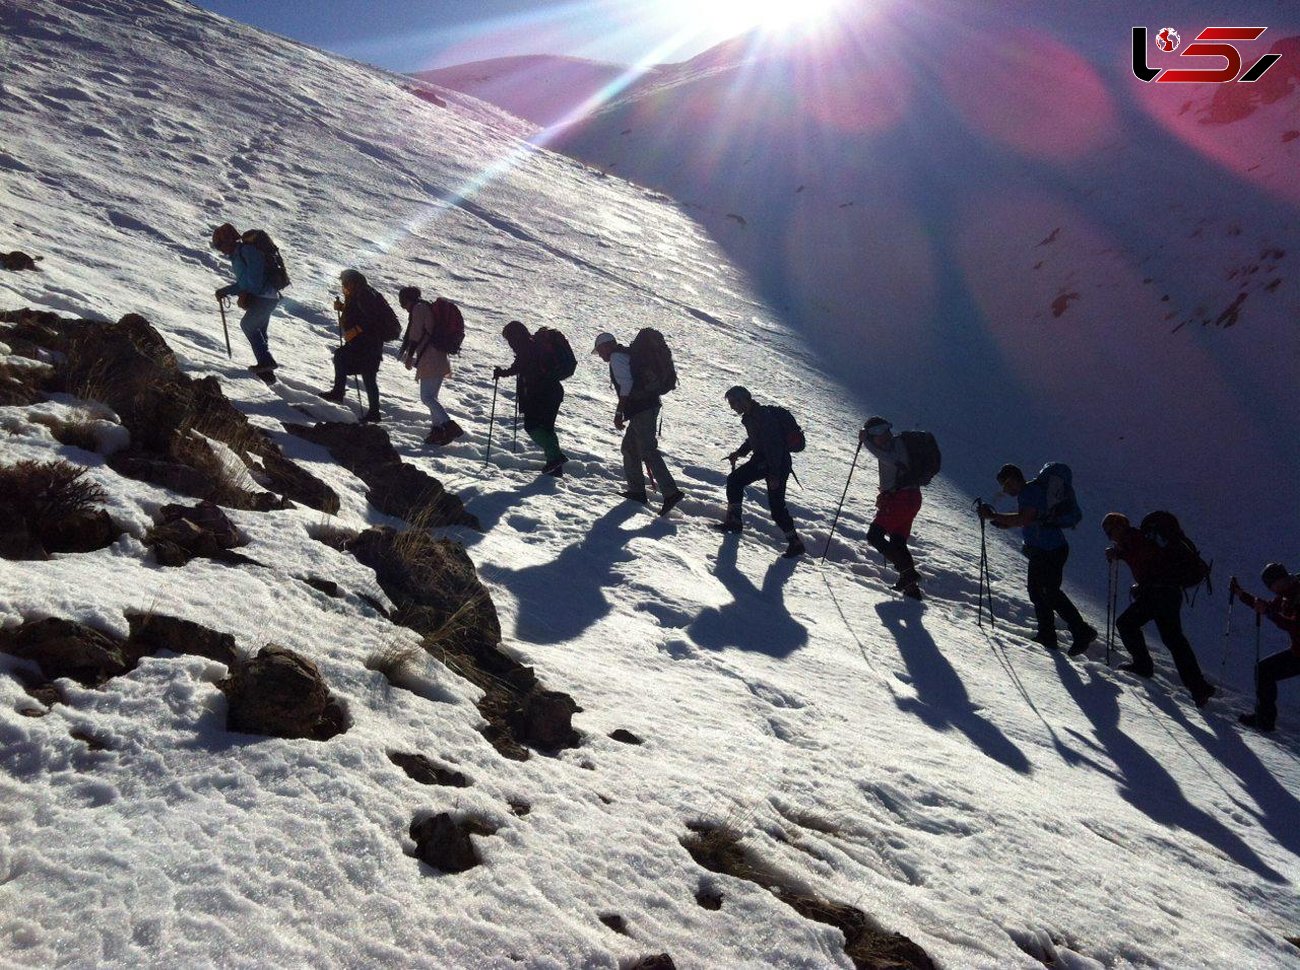 ماجرای سرنوشت نامعلوم ۳ کوهنورد ایرانی که در کوهستان ناپدید شدند
